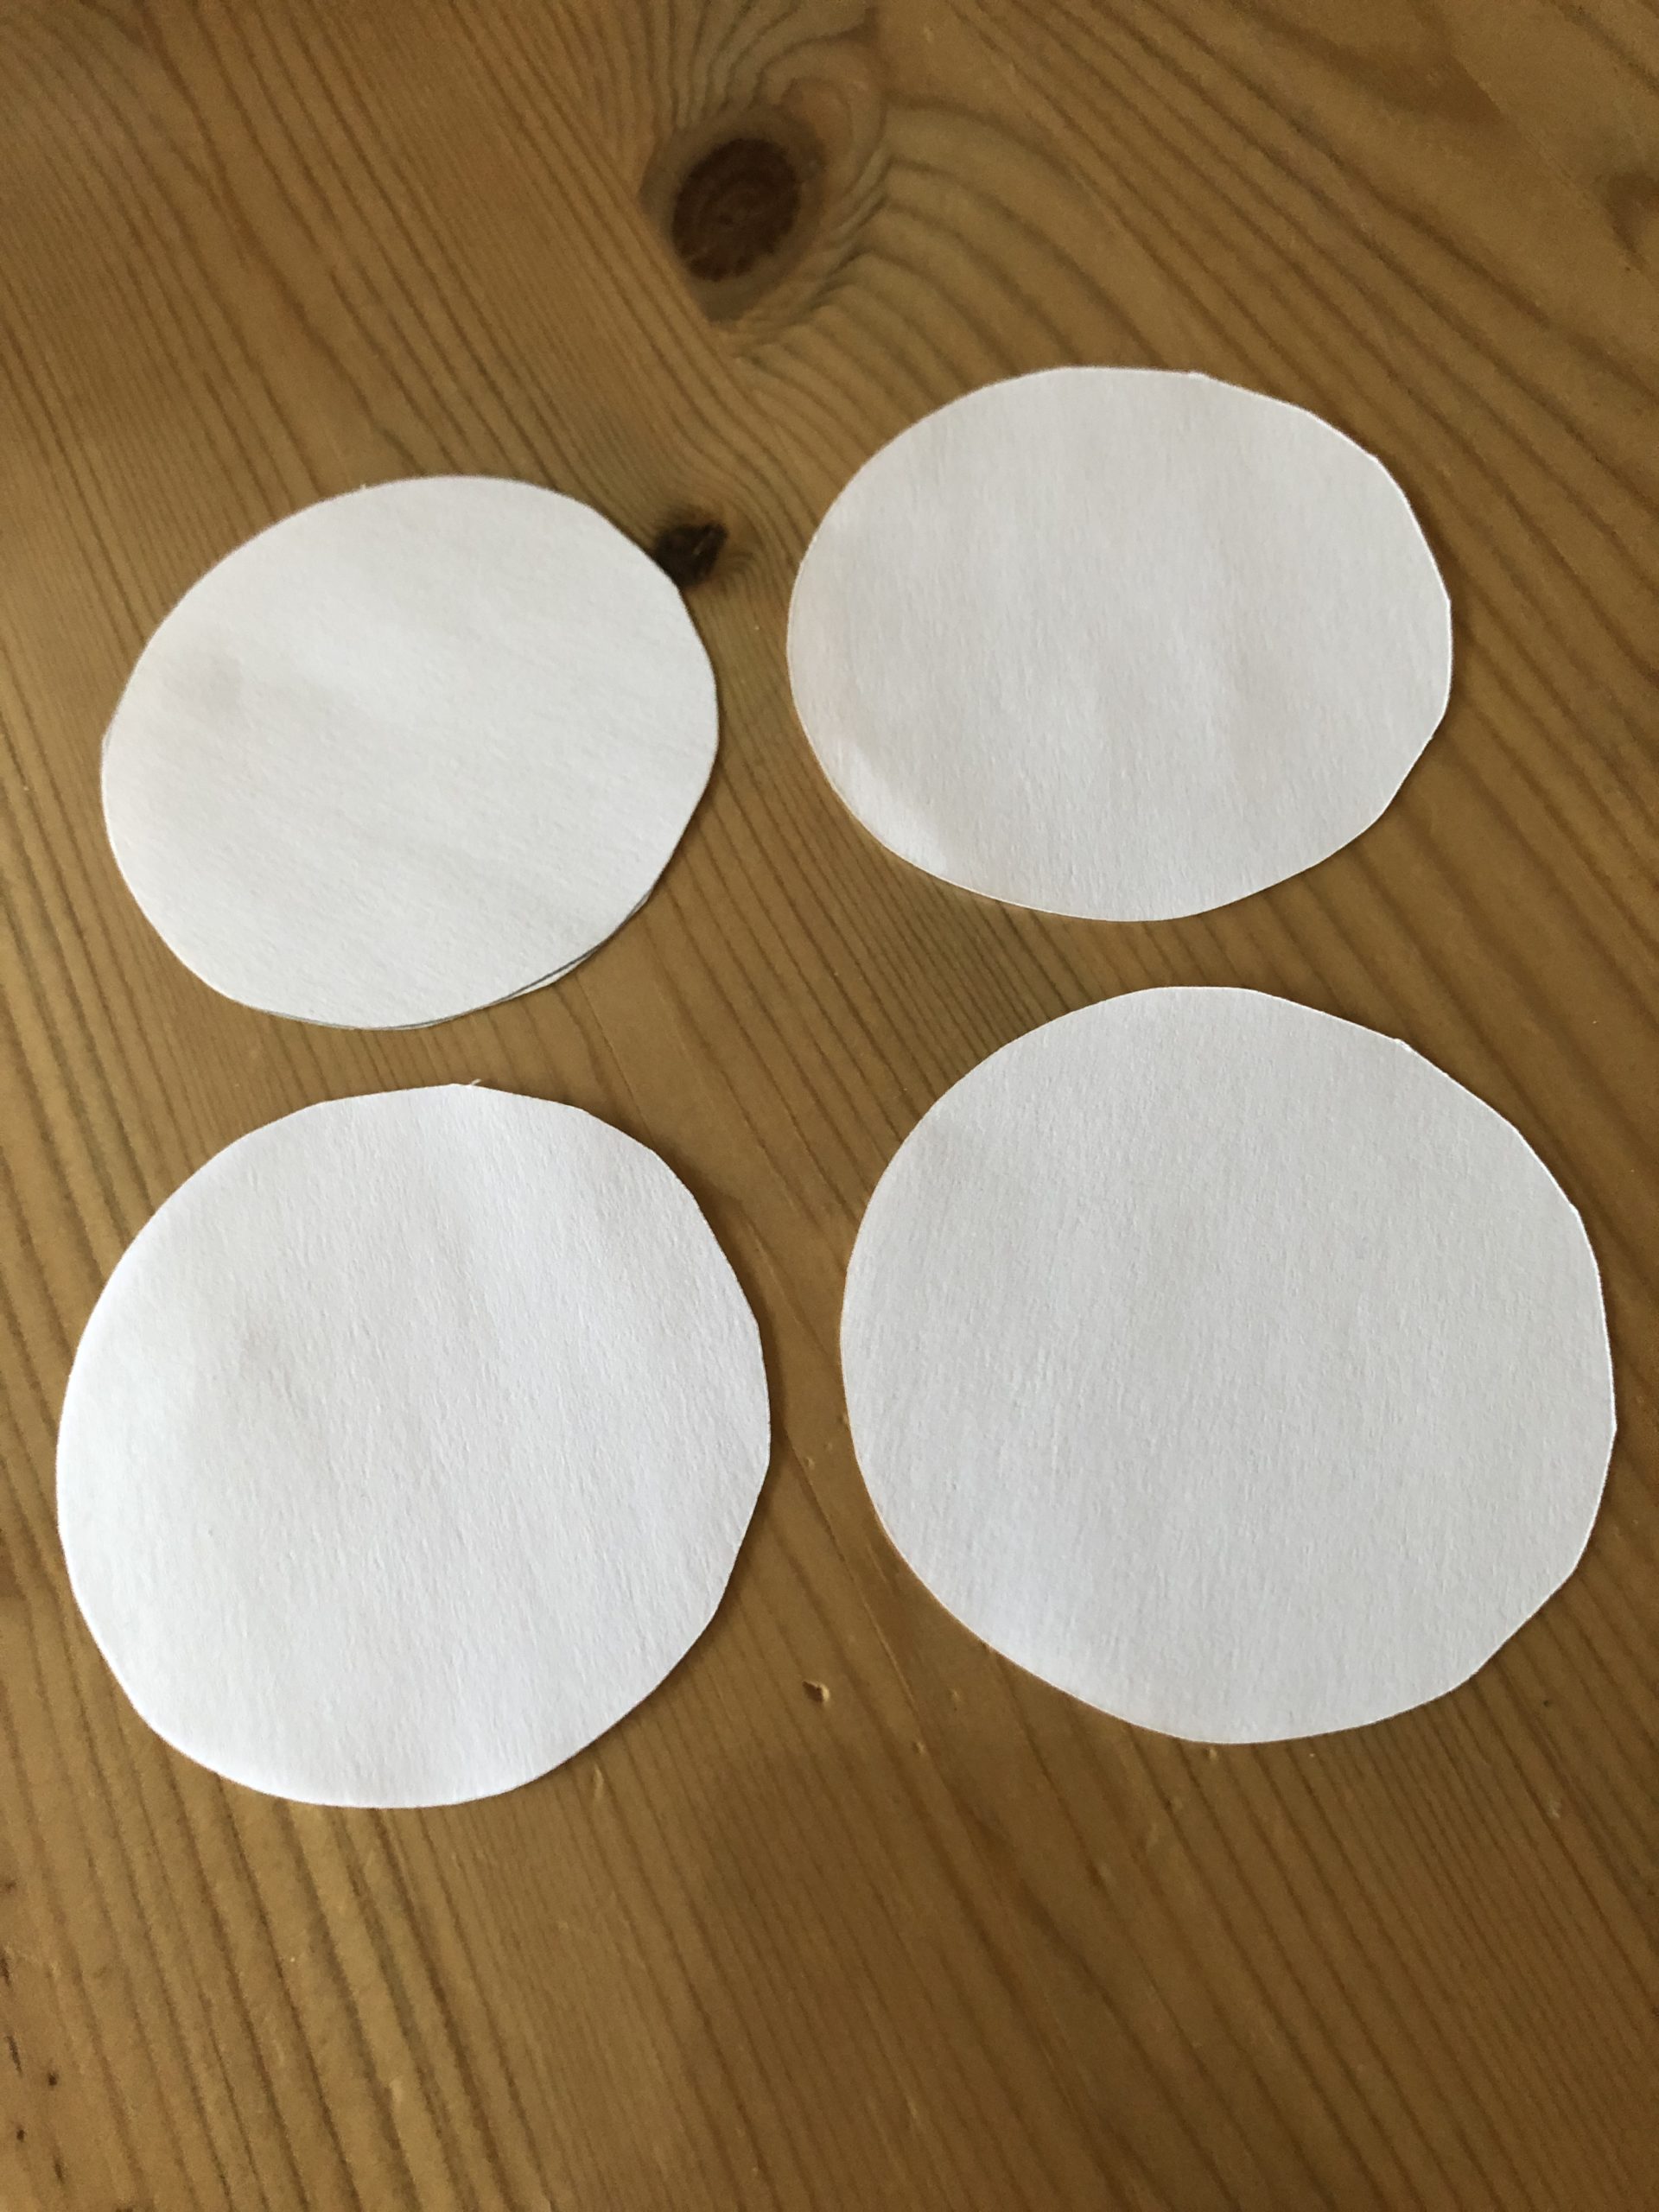 Bild zum Schritt 4 für die Kinder-Beschäftigung: 'Schneidet dazu 4 weiße Kreise aus Toilettenpapier aus - das...'